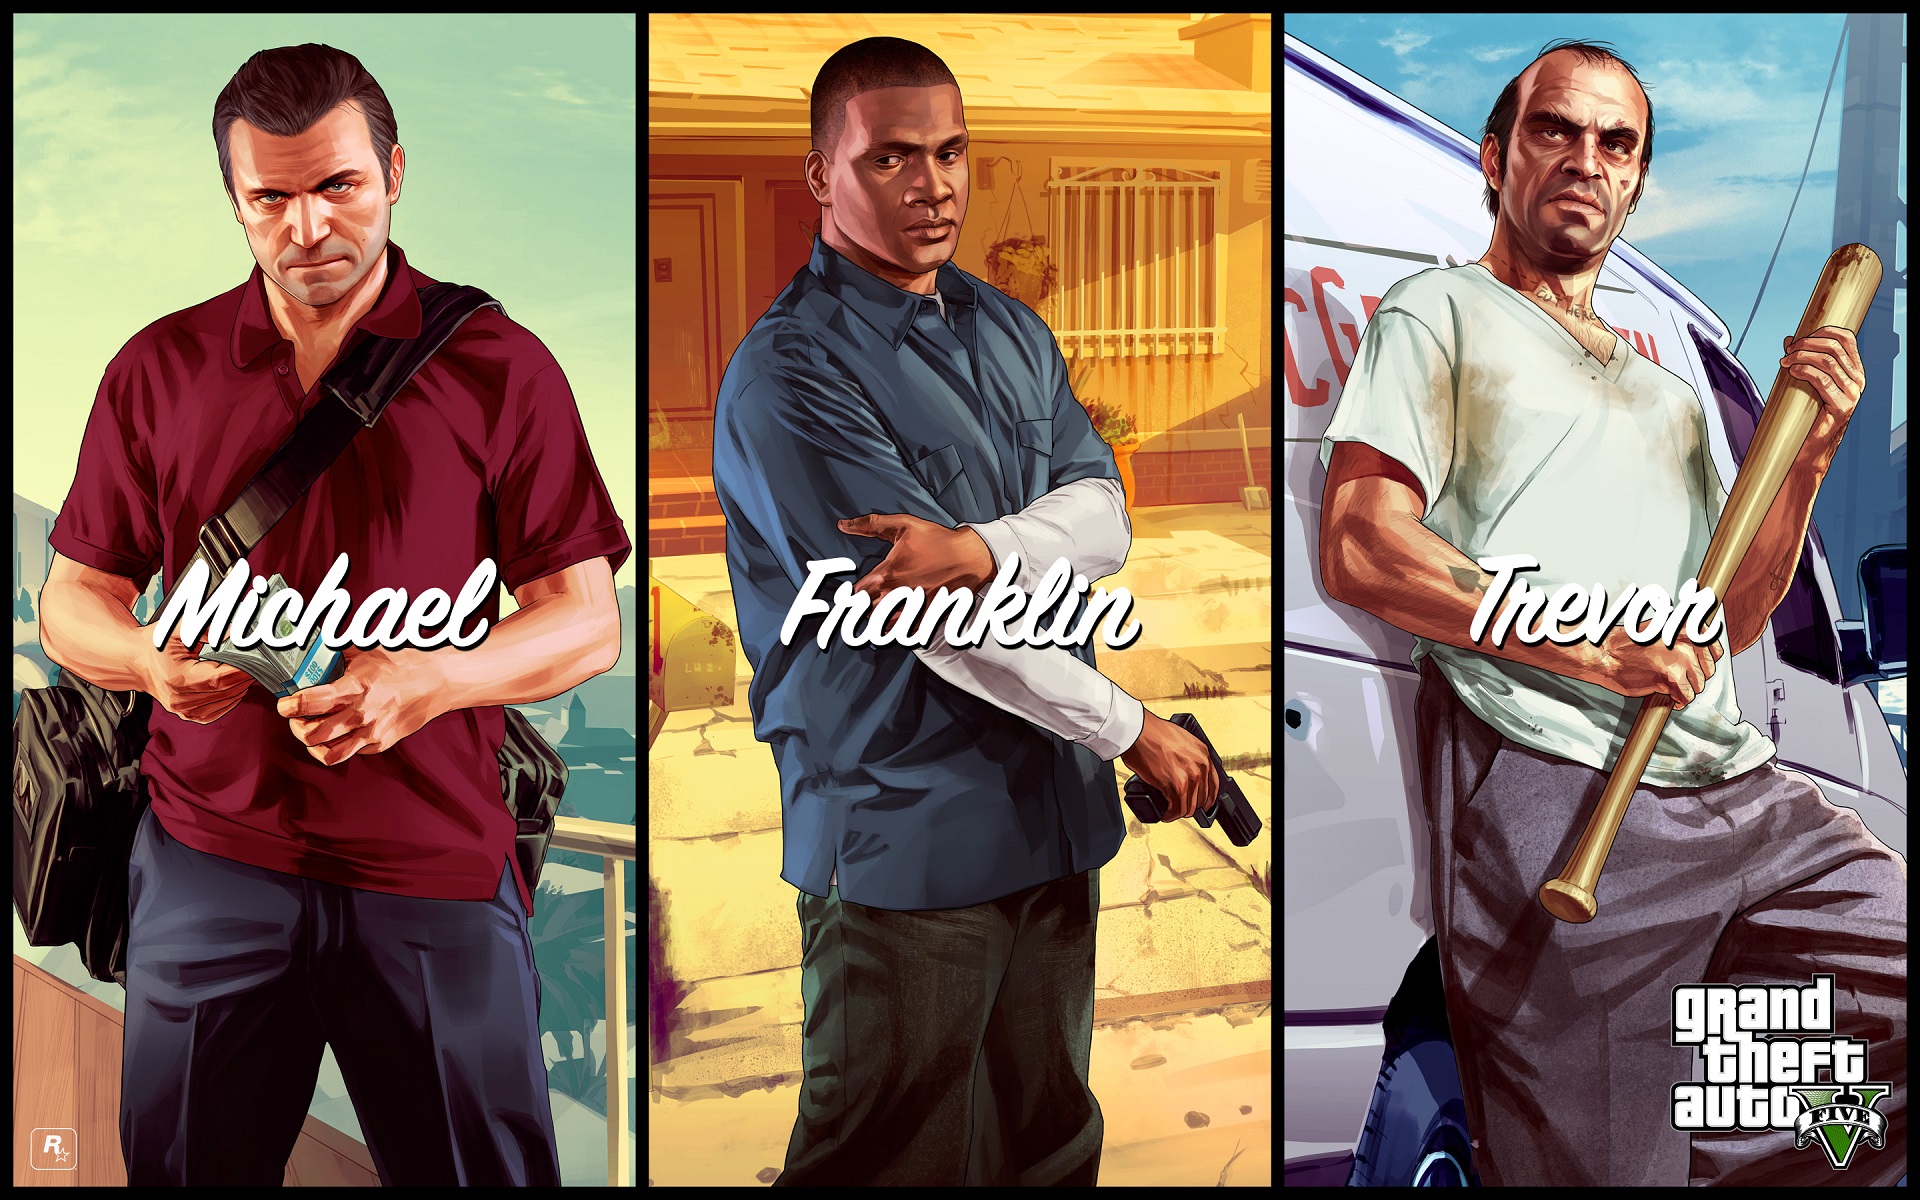 Le Coup Du Siècle Gta 5 Fondos de pantalla de GTA 5, Wallpapers Grand Theft Auto V Gratis